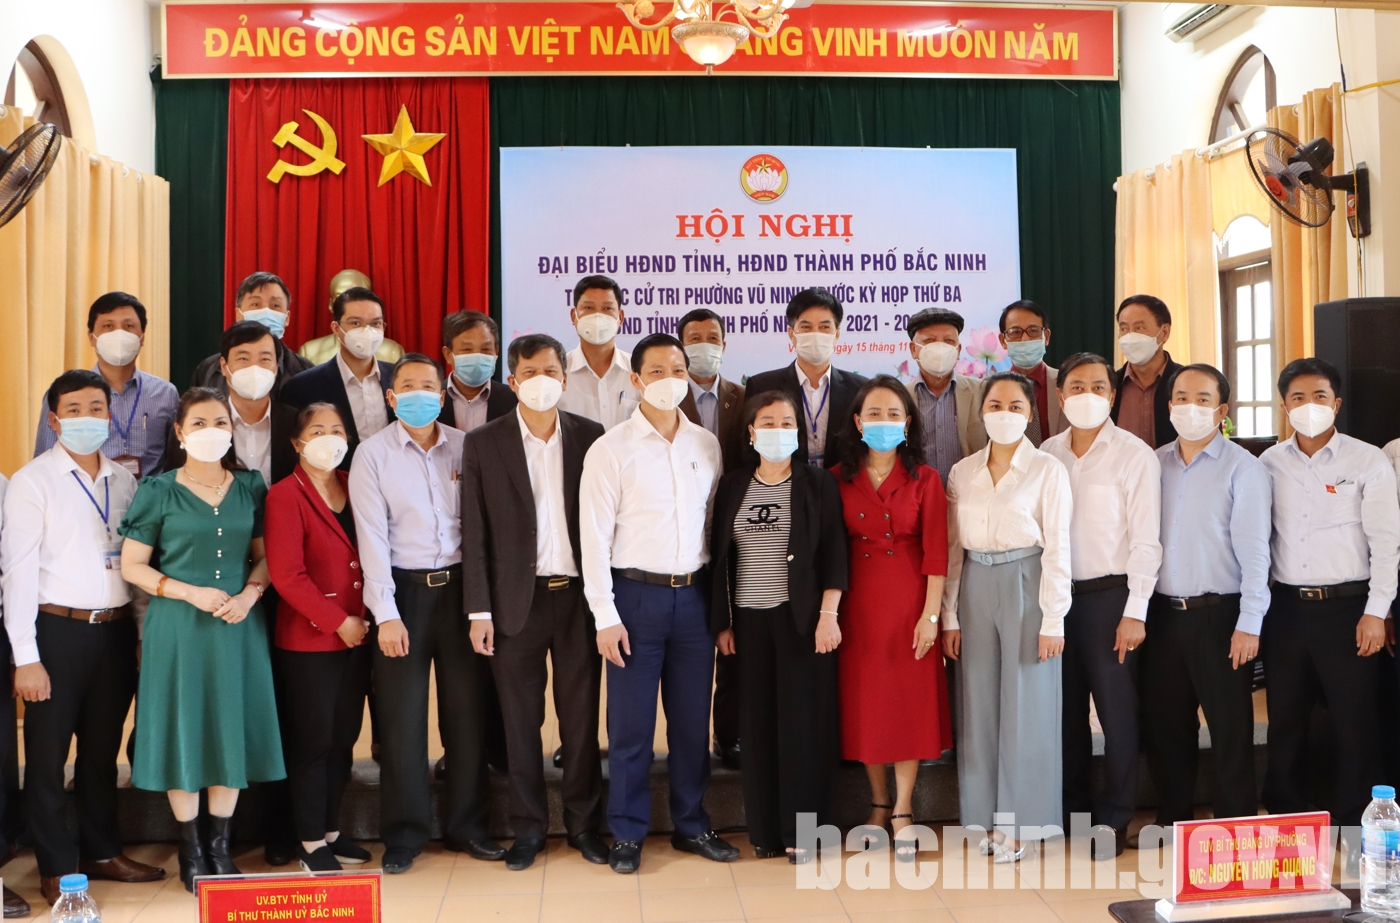 Phó Chủ tịch Thường trực UBND tỉnh tiếp xúc cử tri phường Vũ Ninh trước kỳ họp thứ 4 HĐND tỉnh